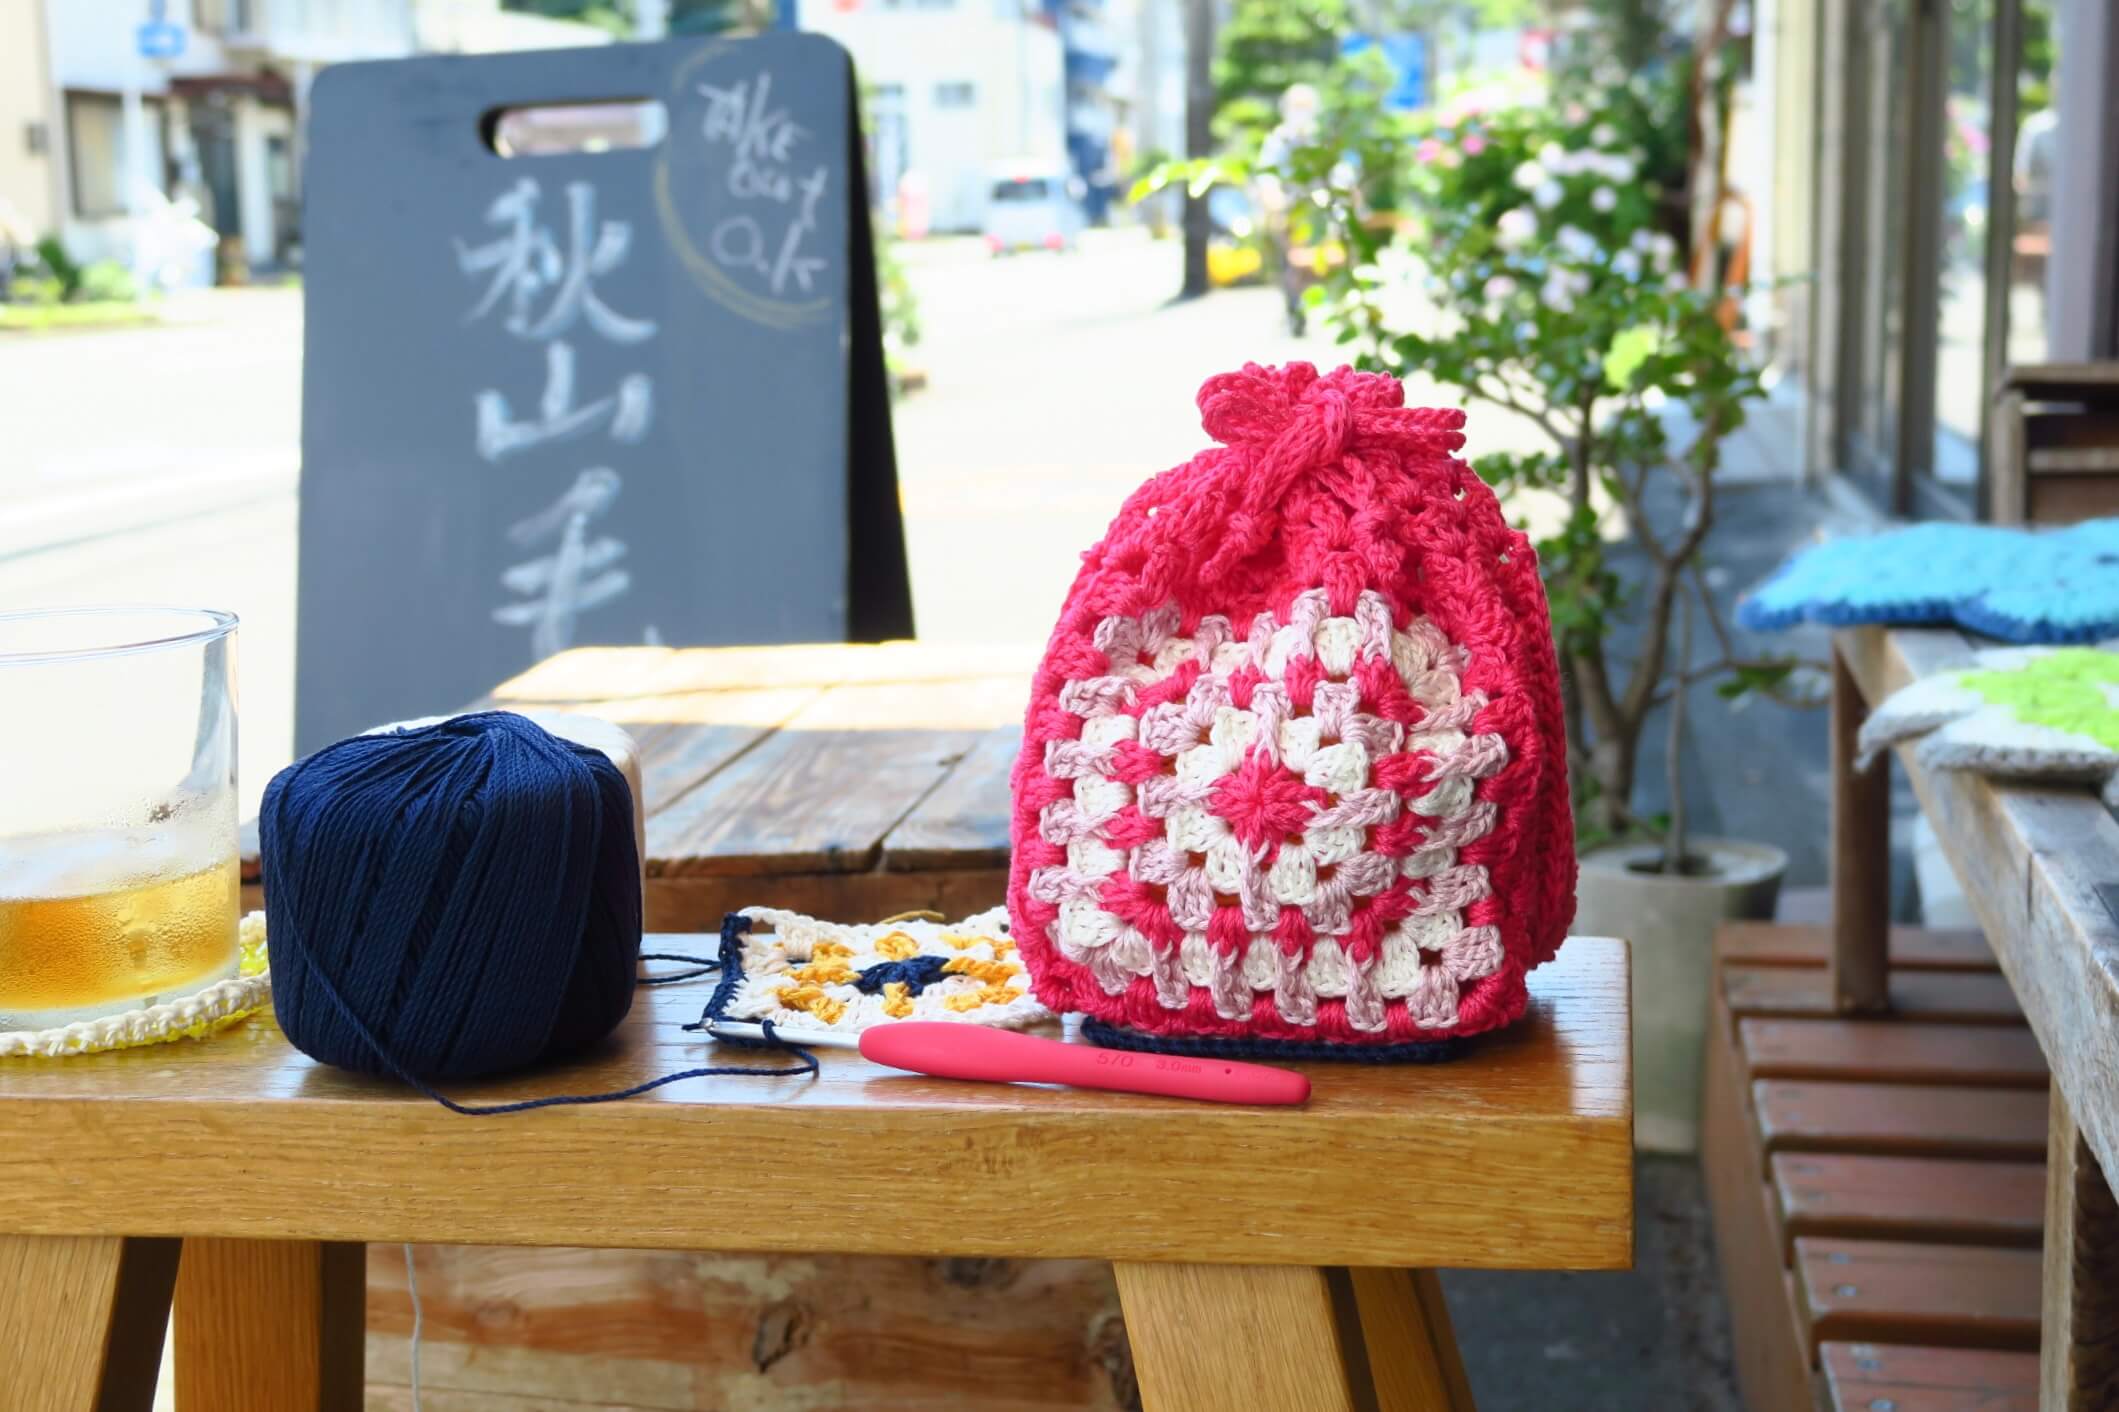 【イベント終了】6月29日(土)は編み物談義「おしゃべりと編み物。時々コーヒー」